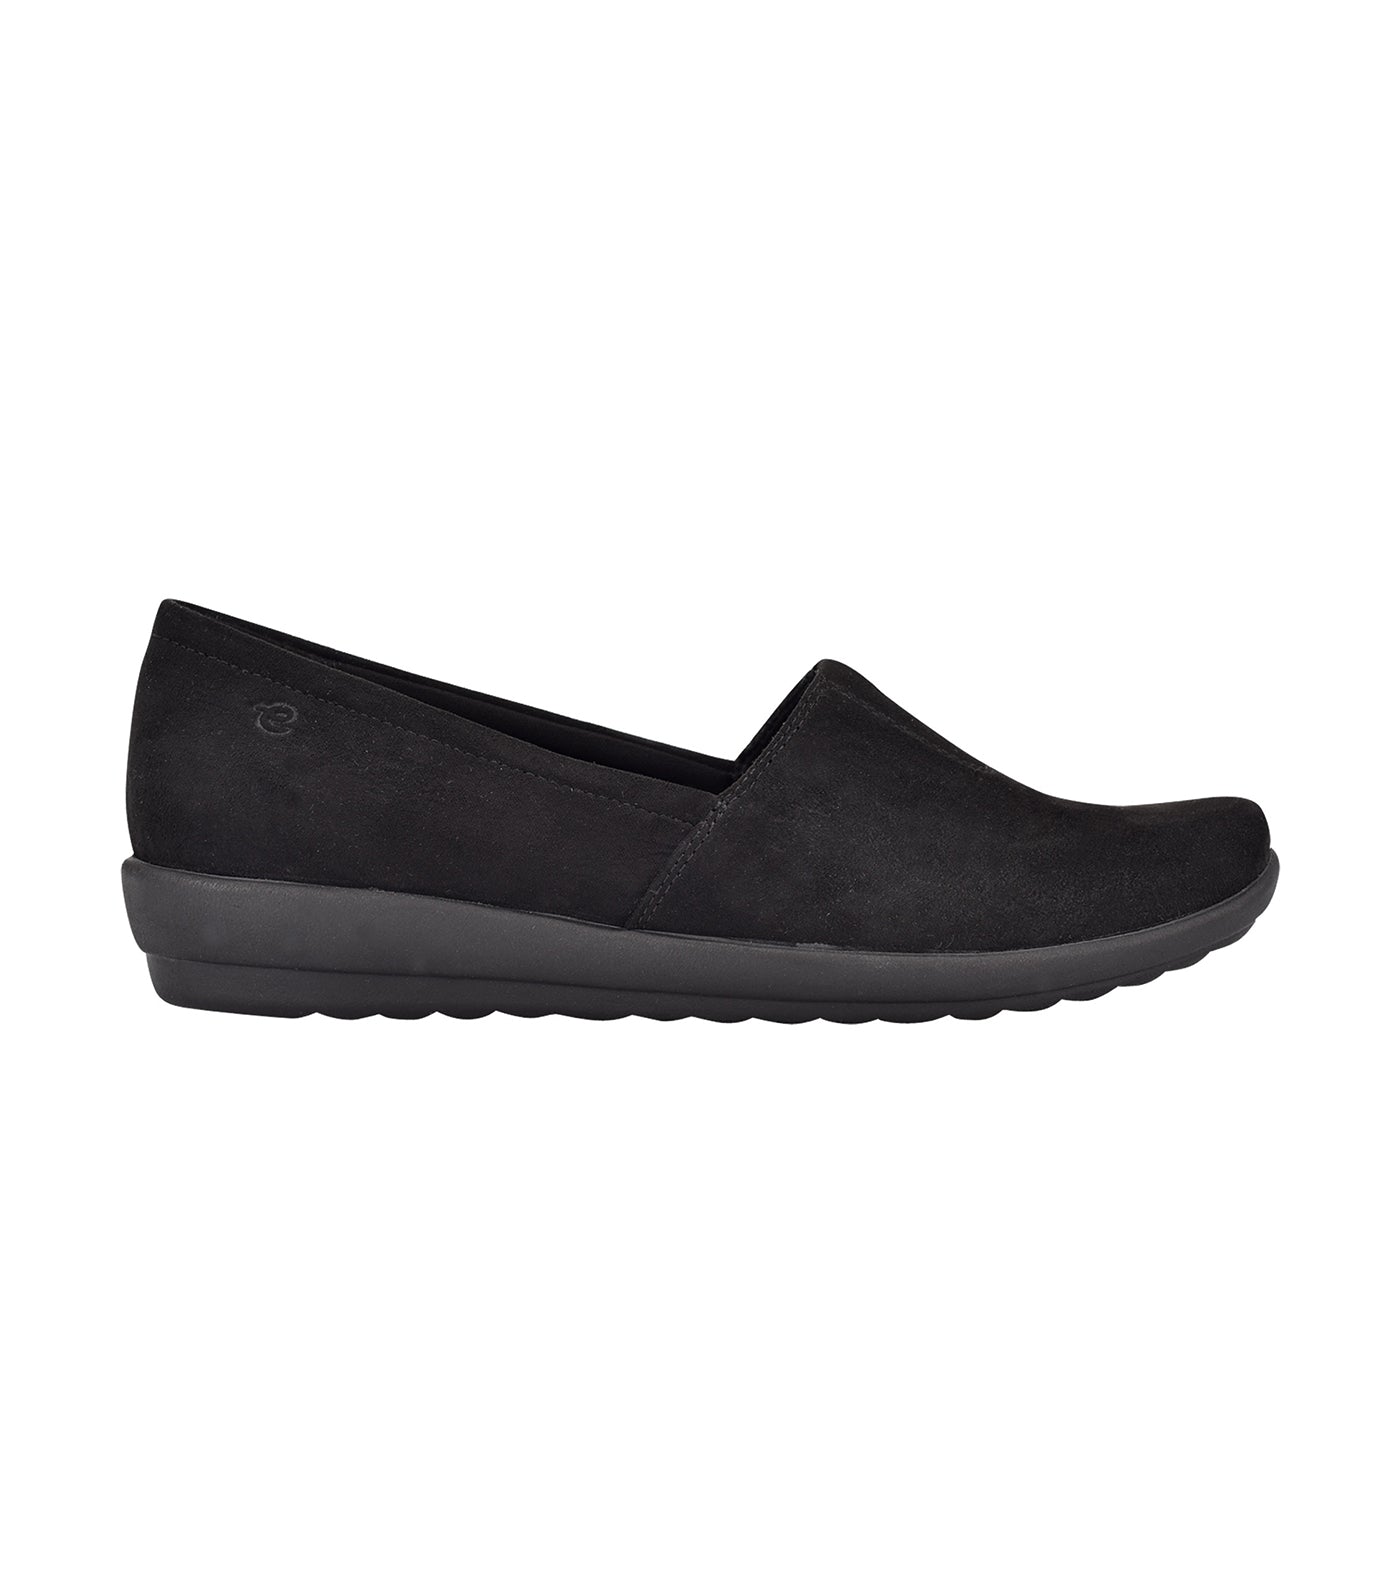 Arlie Slip-On Casual Walking Shoes Black